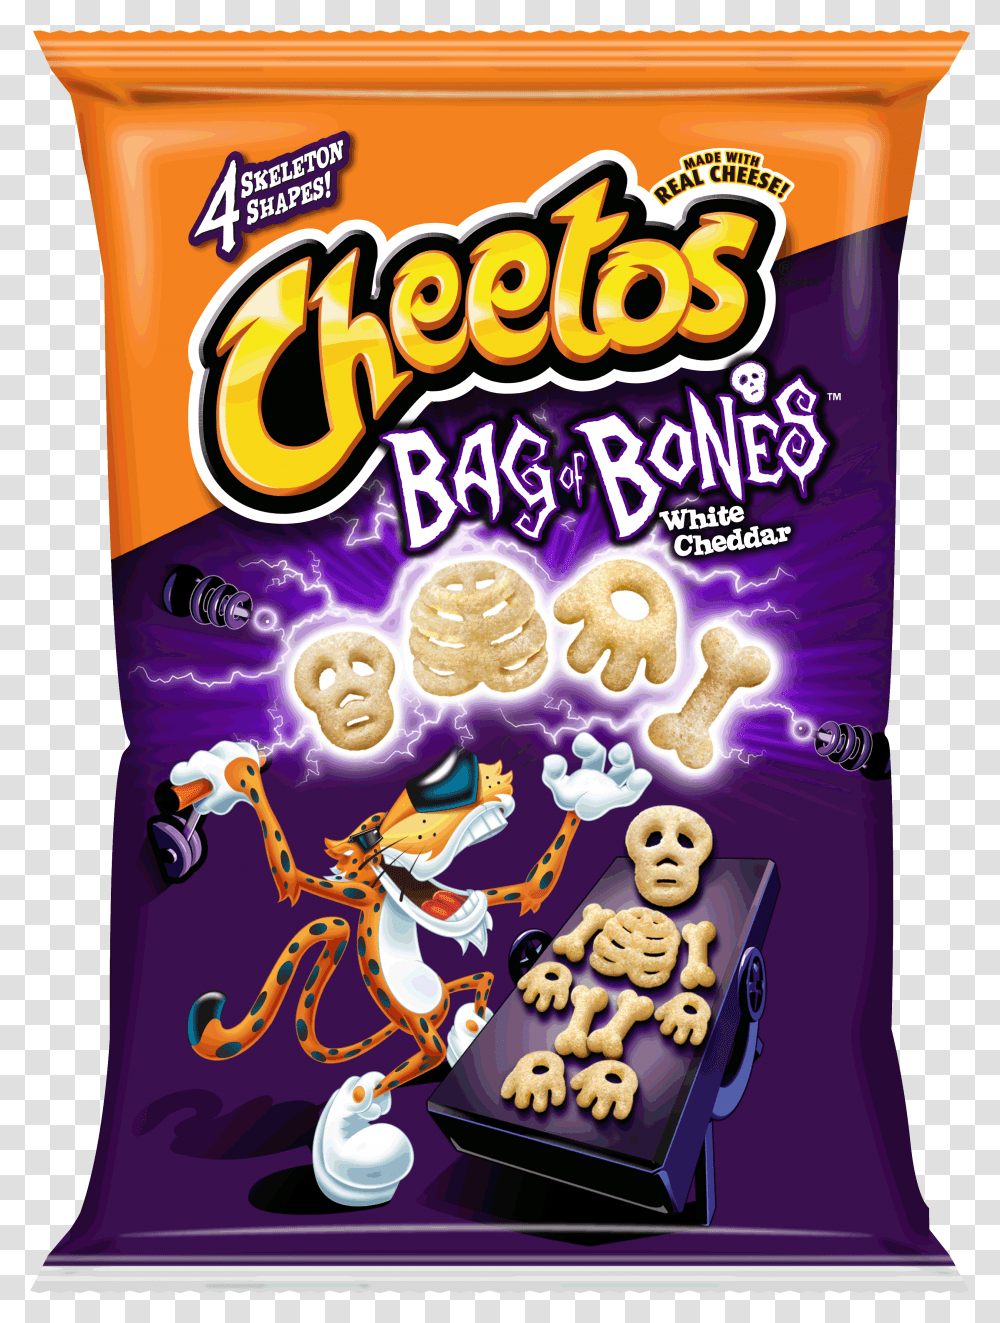 Cheetos Bag Of Bones Final, Food, Outdoors, Candy, Nature Transparent Png